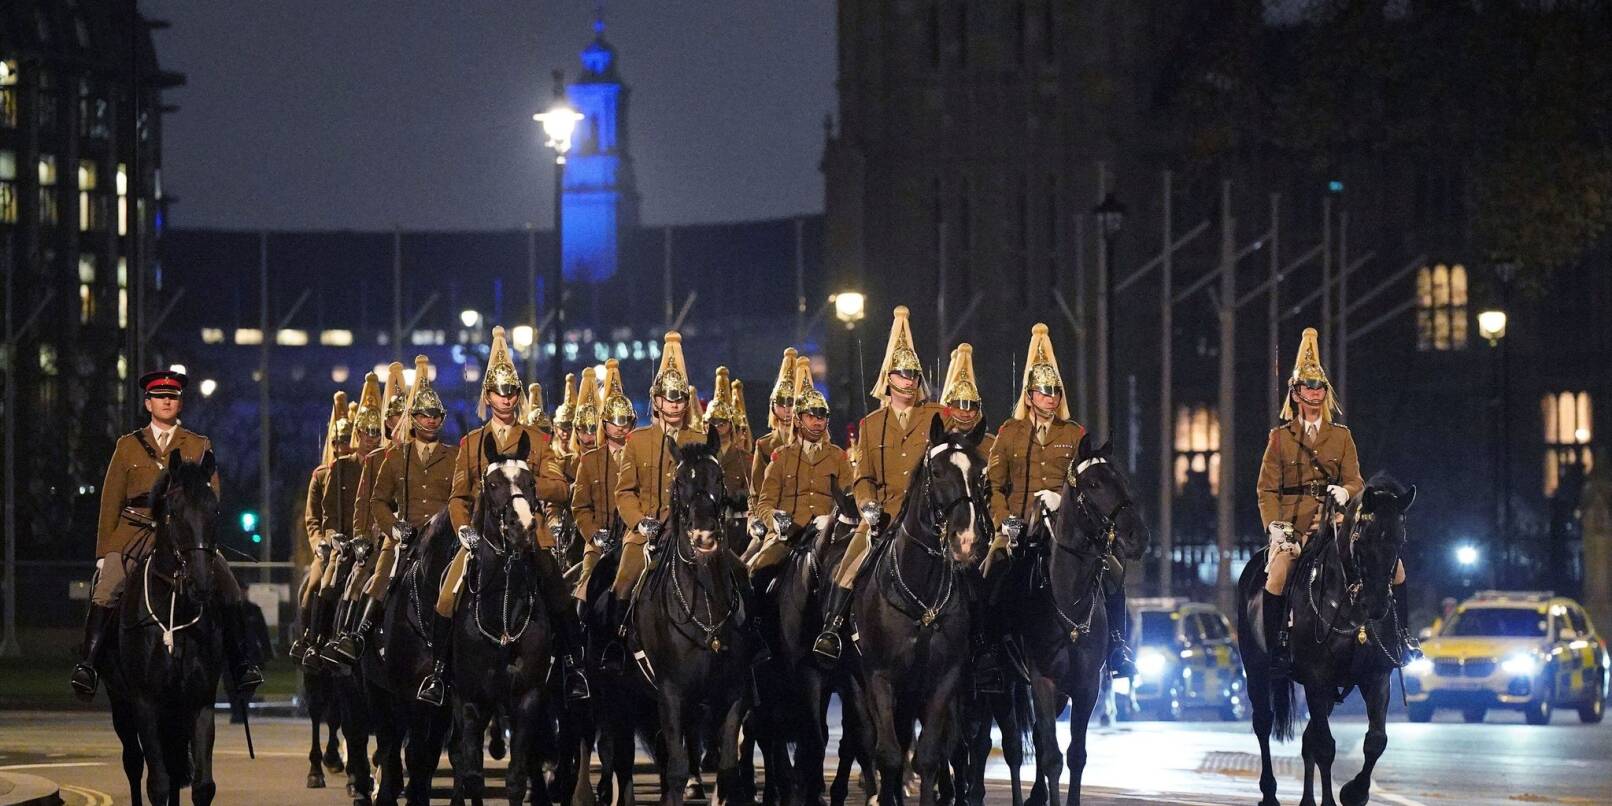 Angehörige des Militärs passieren die Westminster Abbey während einer Probe für die Feierlichkeiten im Rahmen der Krönung von König Charles III.